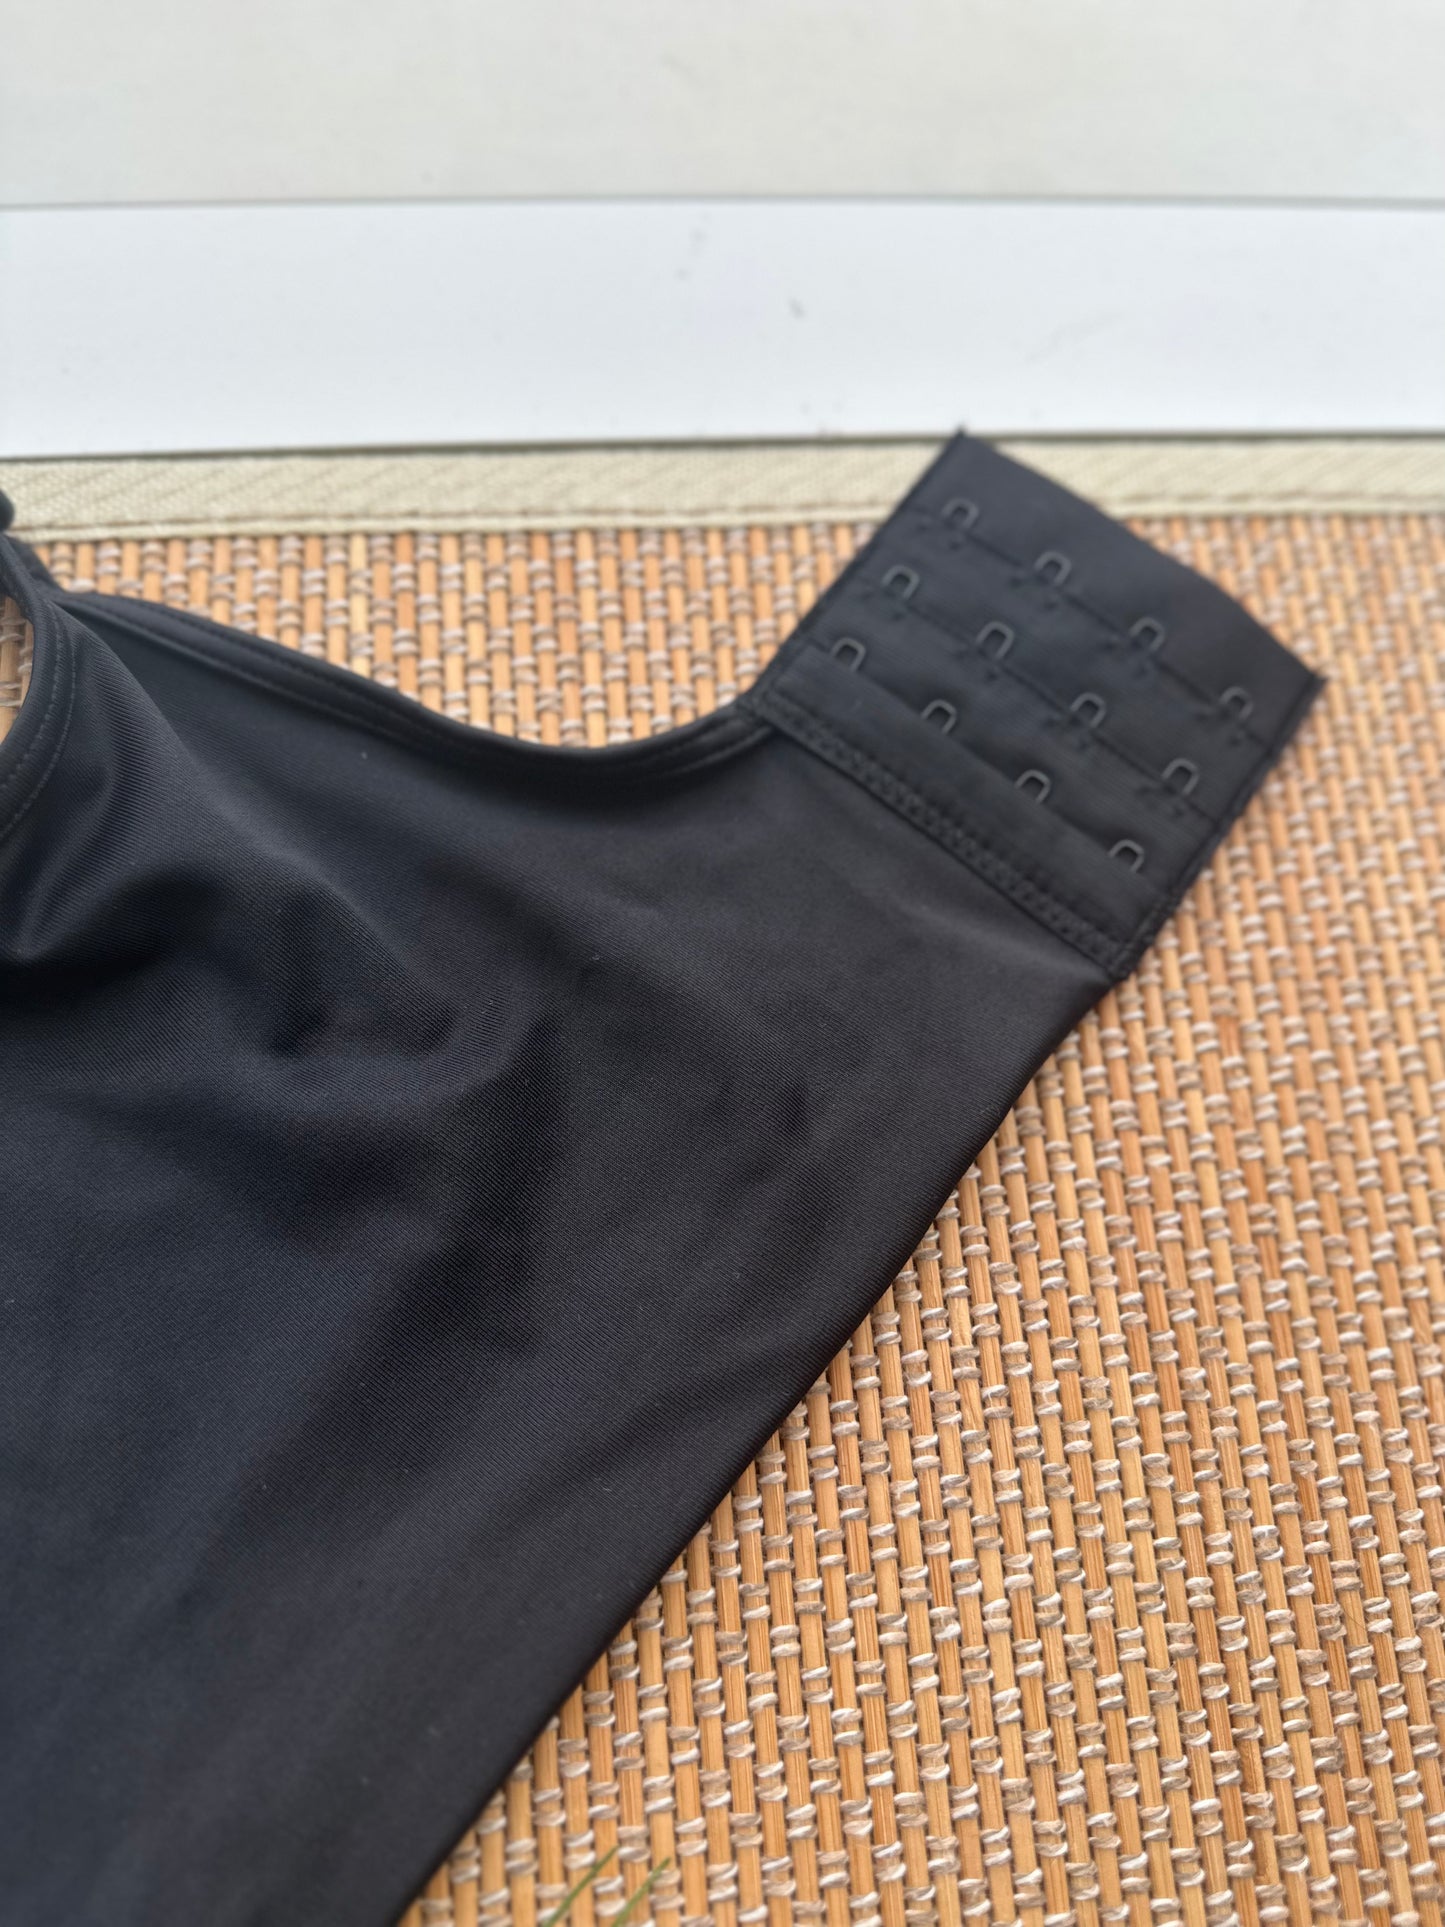 BL Seamless Black Tshirt Plus Size Bra